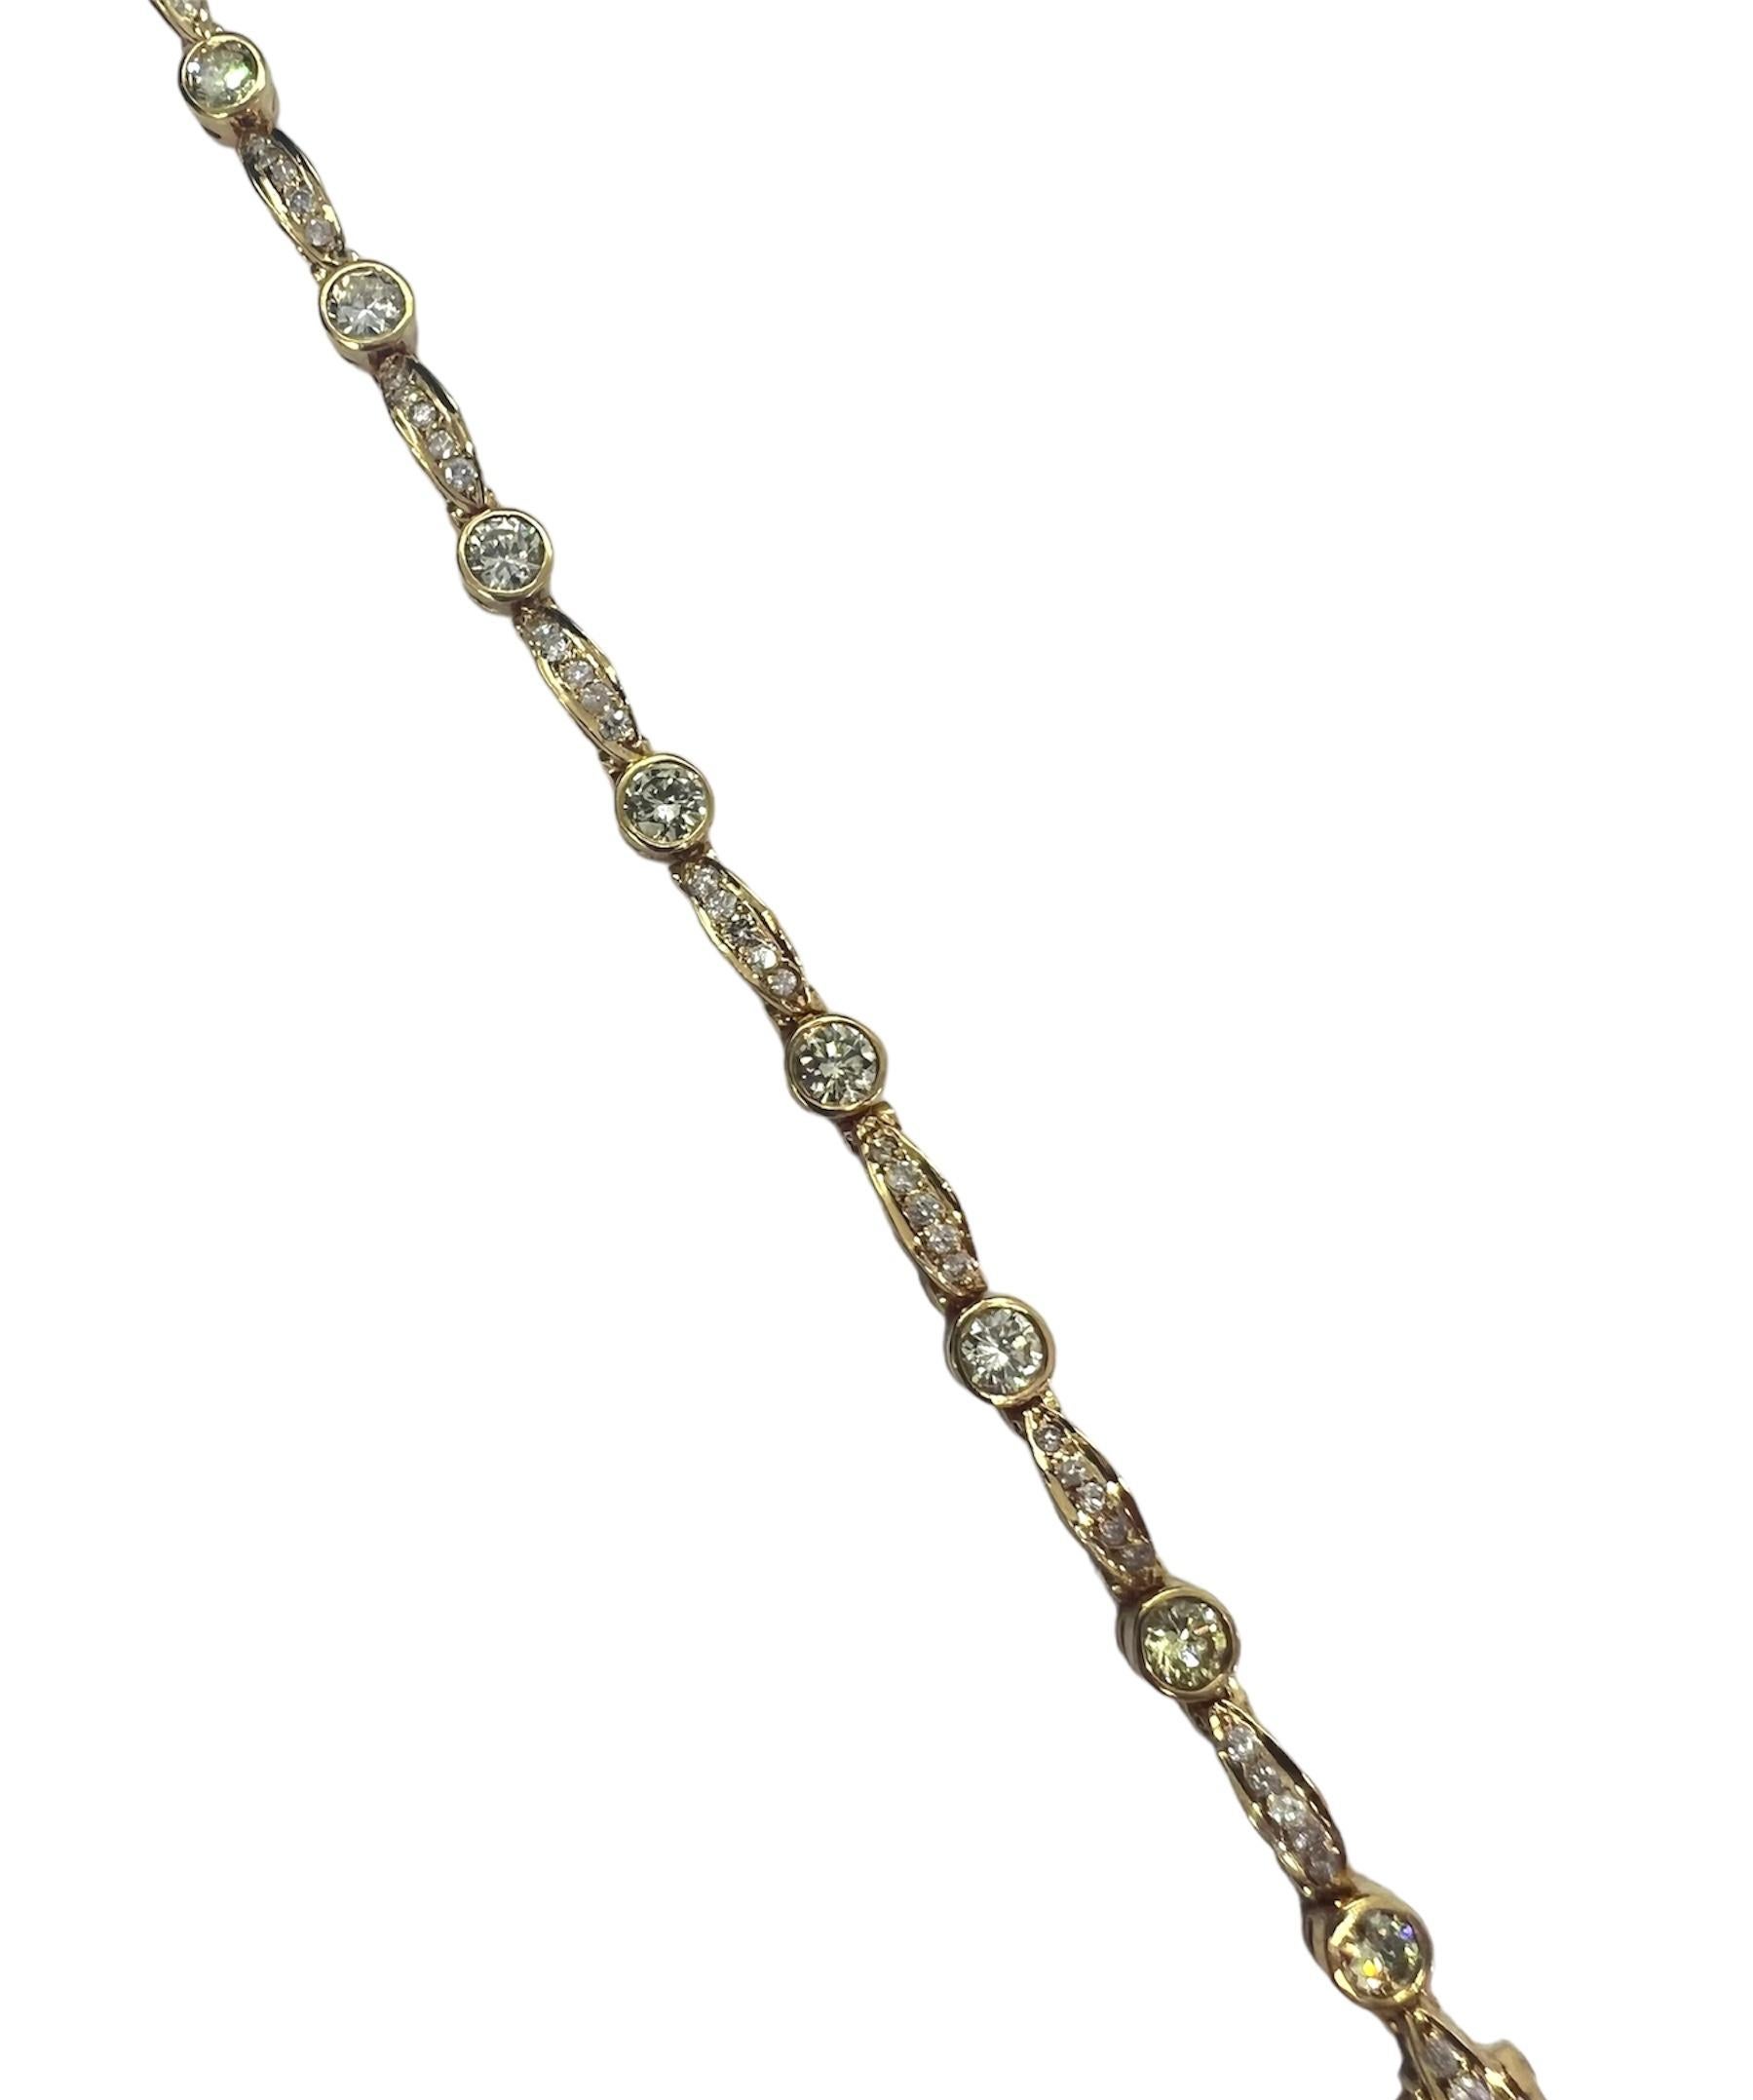 Bracelet en or jaune avec diamants.

Sophia D by Joseph Dardashti Ltd est connue dans le monde entier depuis 35 ans et s'inspire du design classique de l'Art déco qui fusionne avec les techniques de fabrication modernes.
